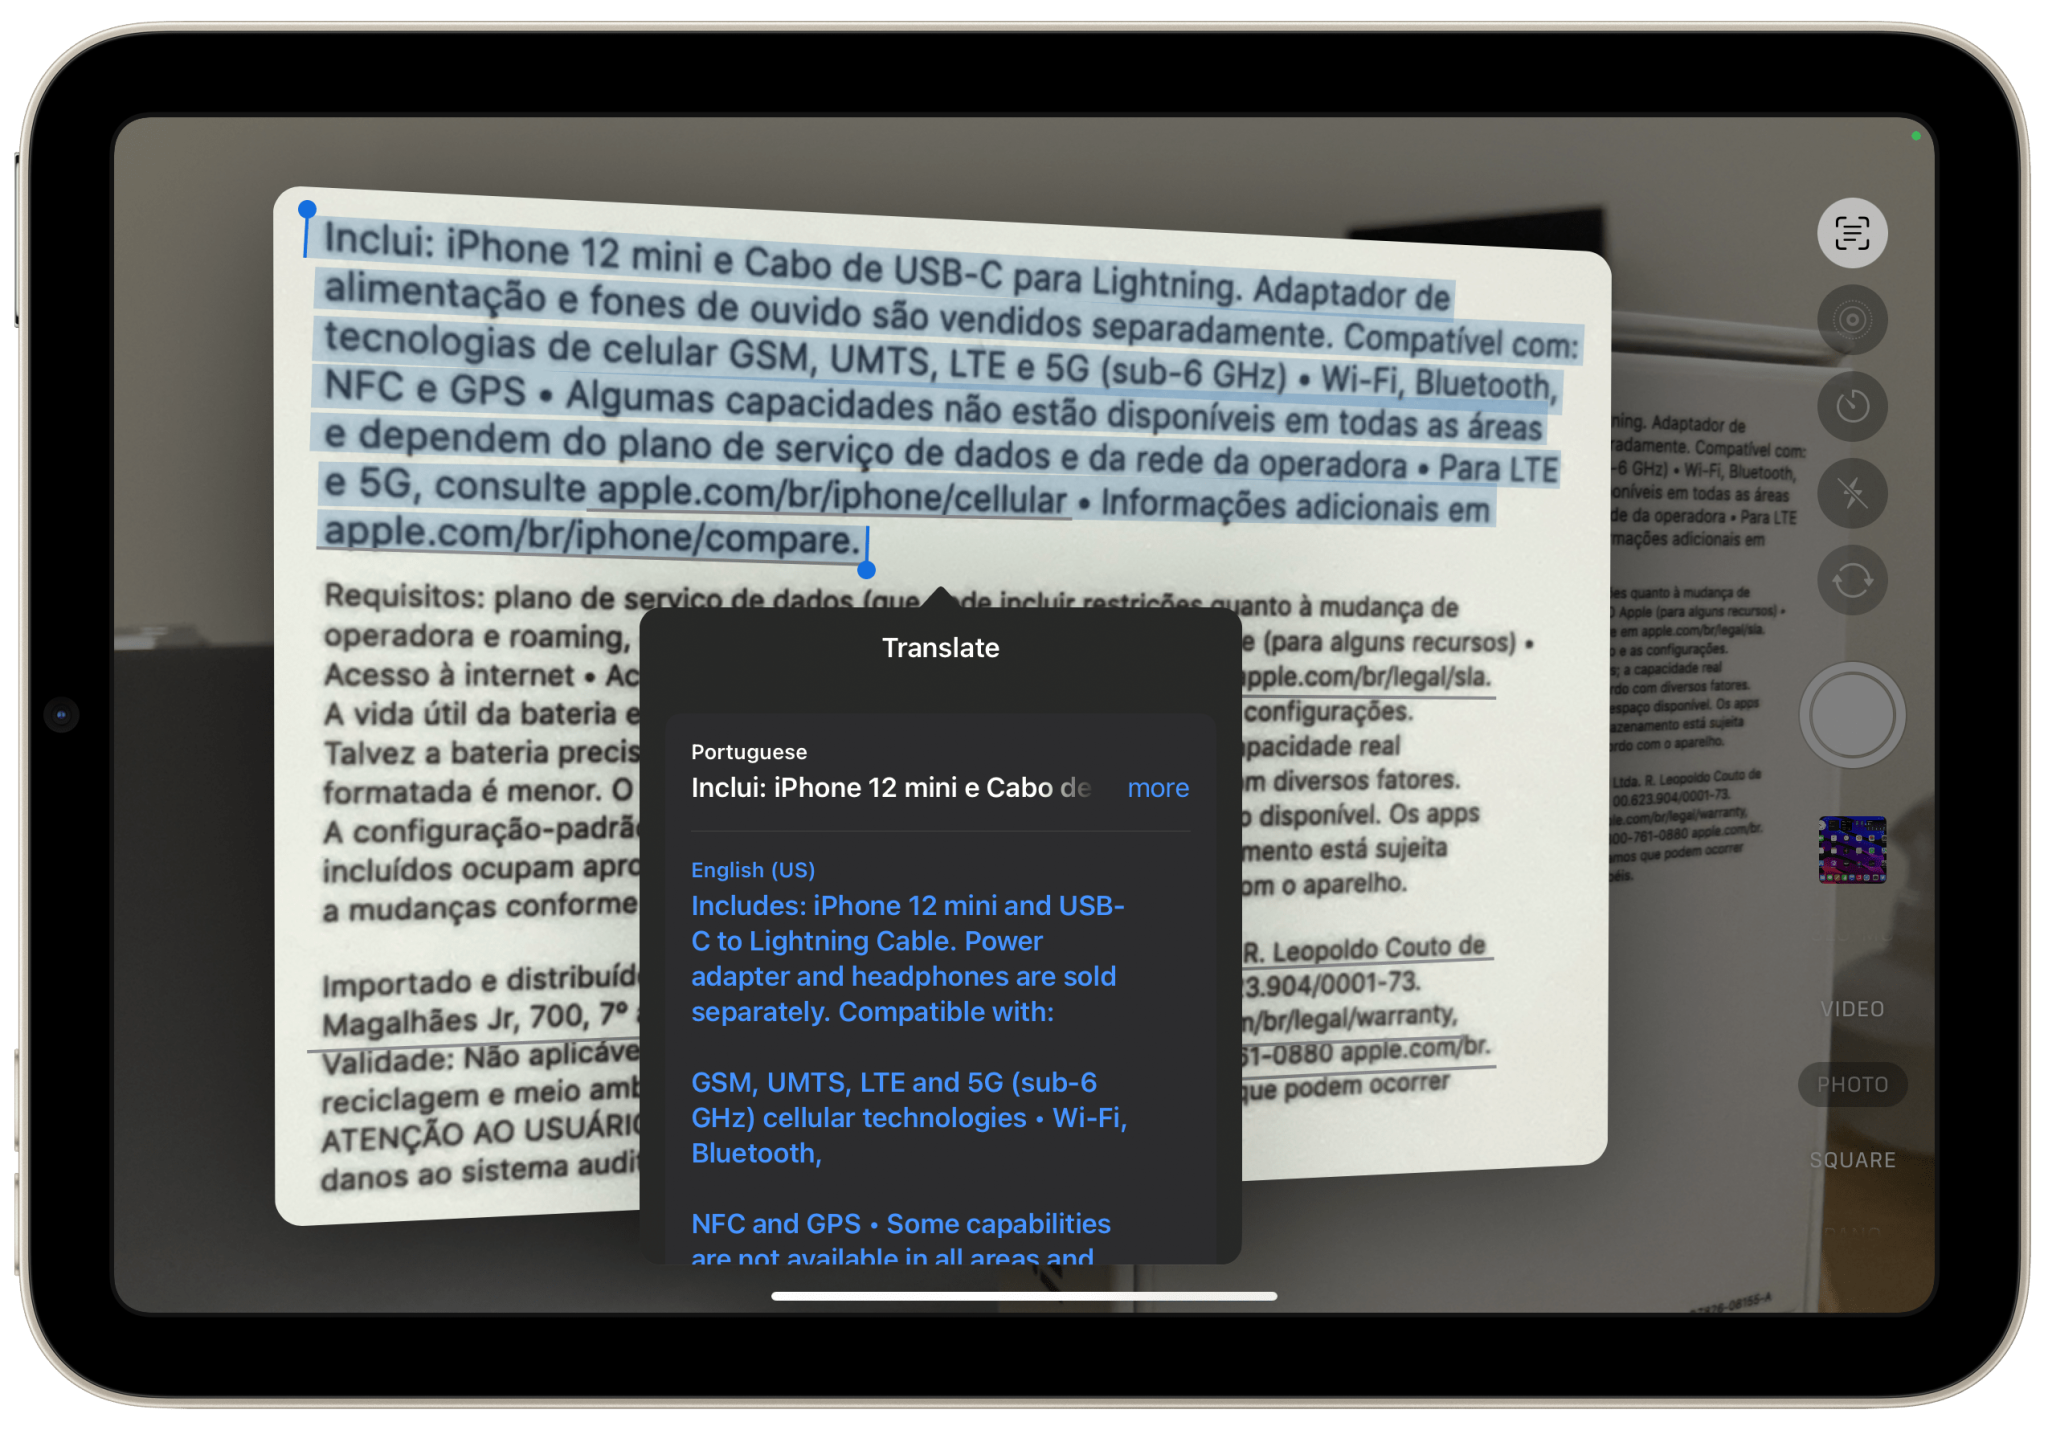 كيف يمكنك ترجمة نص باستخدام الكاميرا على الآيباد مع iPadOS 16